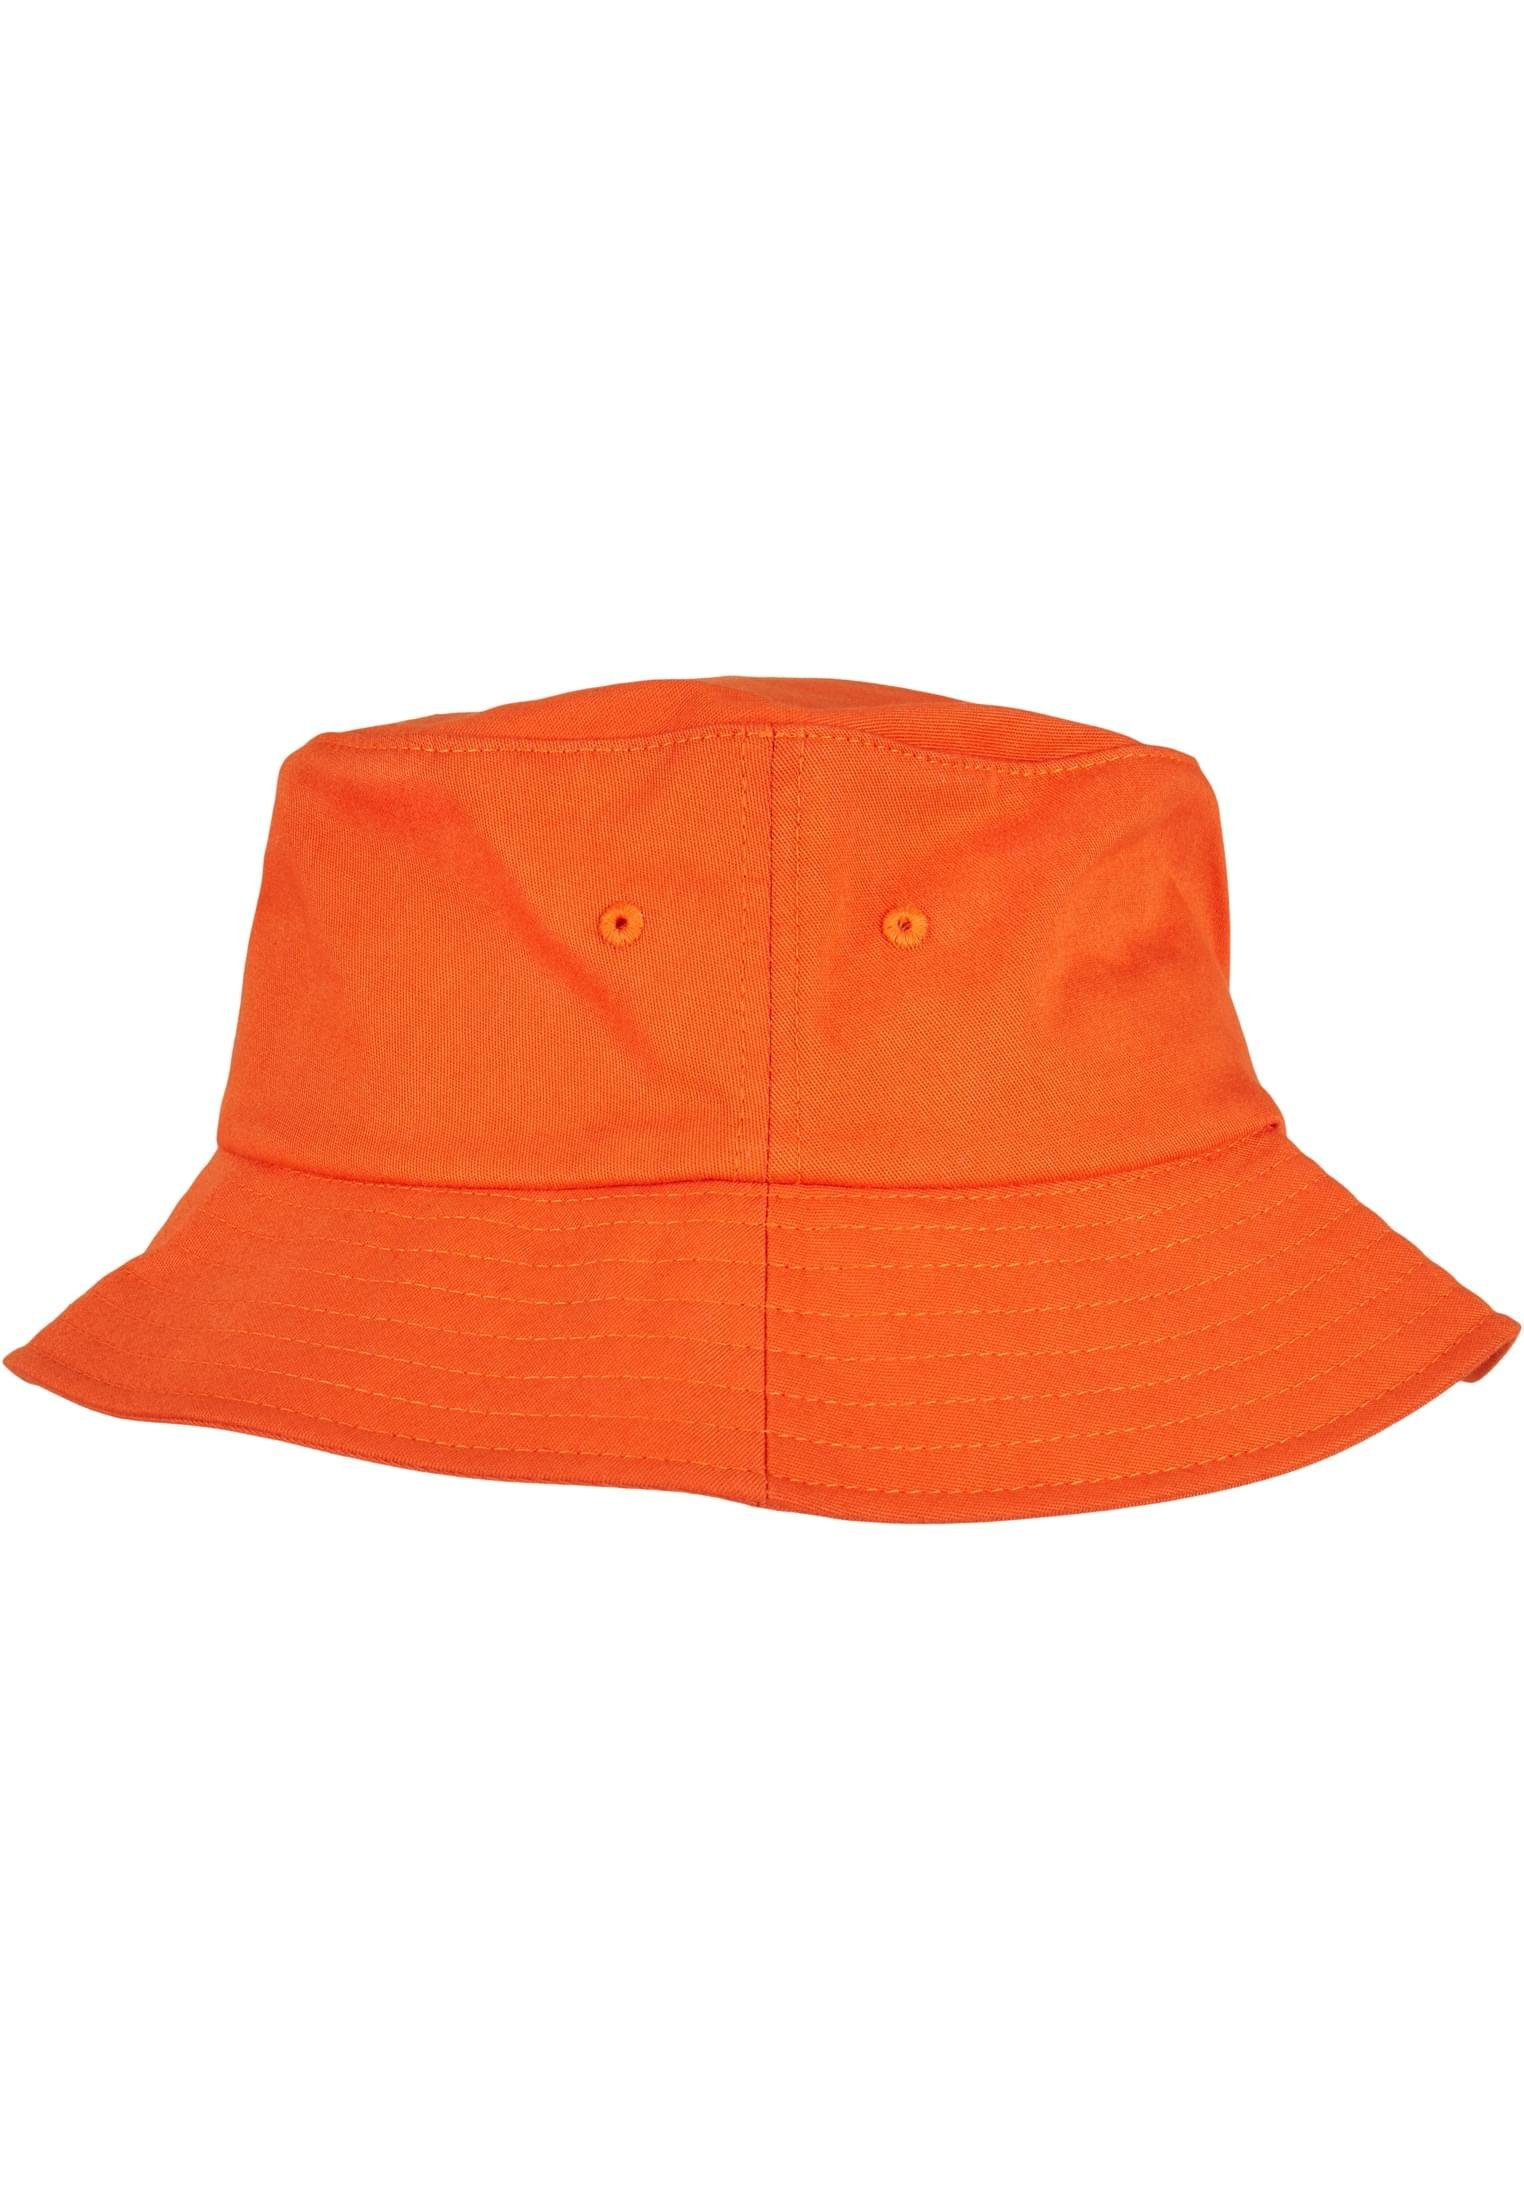 Hat Flexfit orange Bucket Cotton Accessoires Twill Cap Flexfit Flex